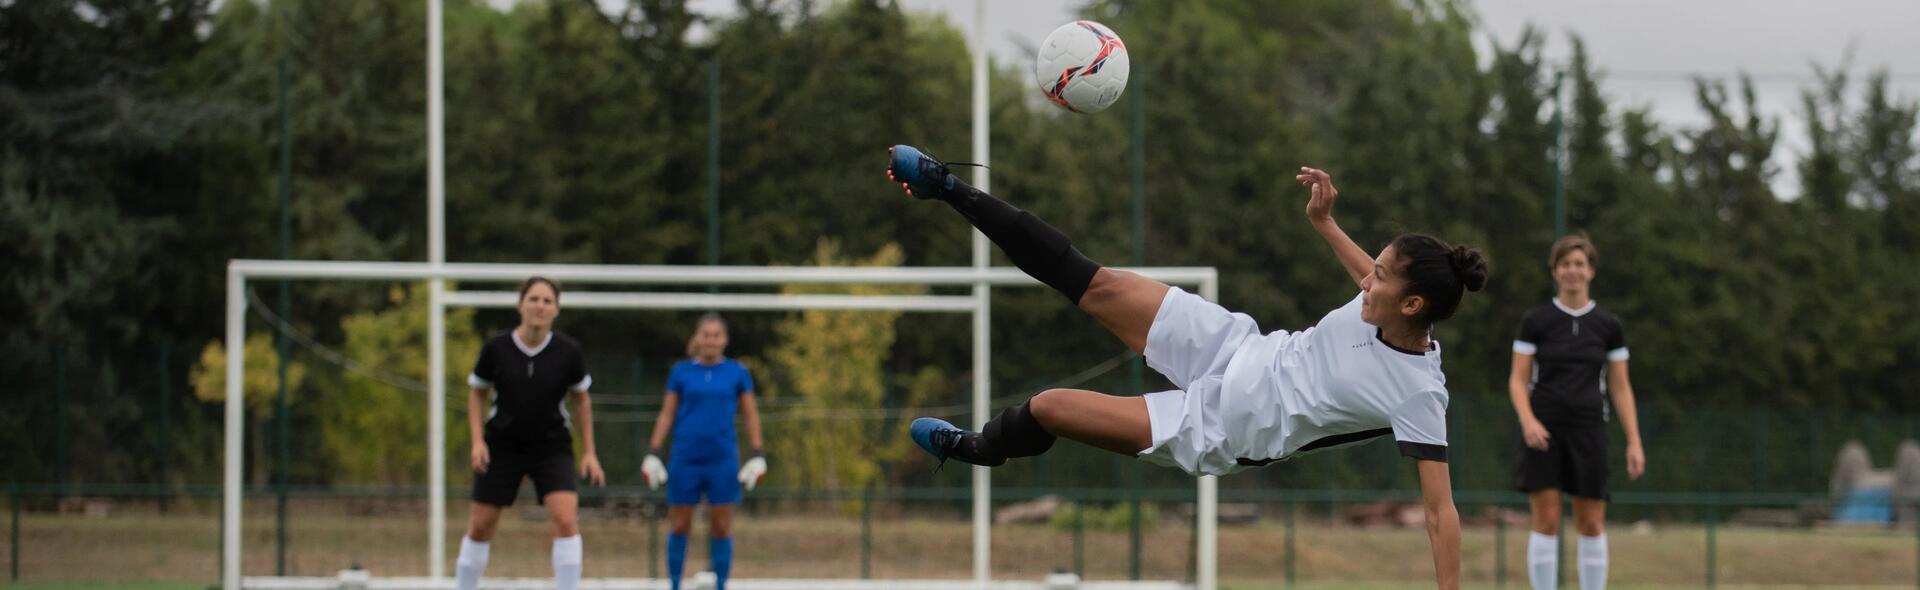 Le football féminin : une pratique en plein essor